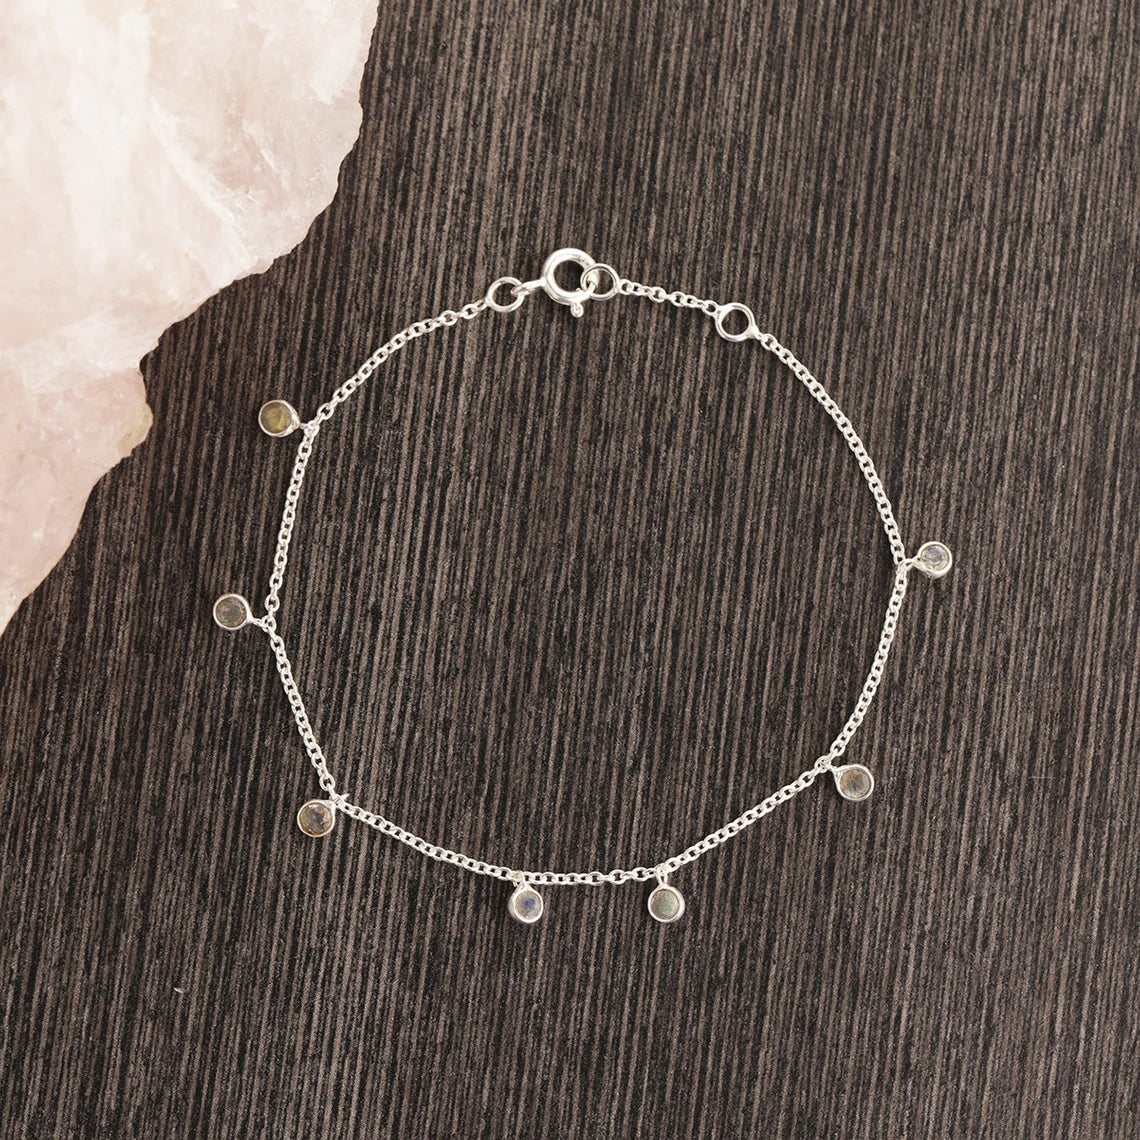 Tiny Labradorite Bracelet, 925 Sterling Silver Bracelet, Blue Stone Bracelet, Adjustable Jewelry, Silver Bracelet Length 7.5"